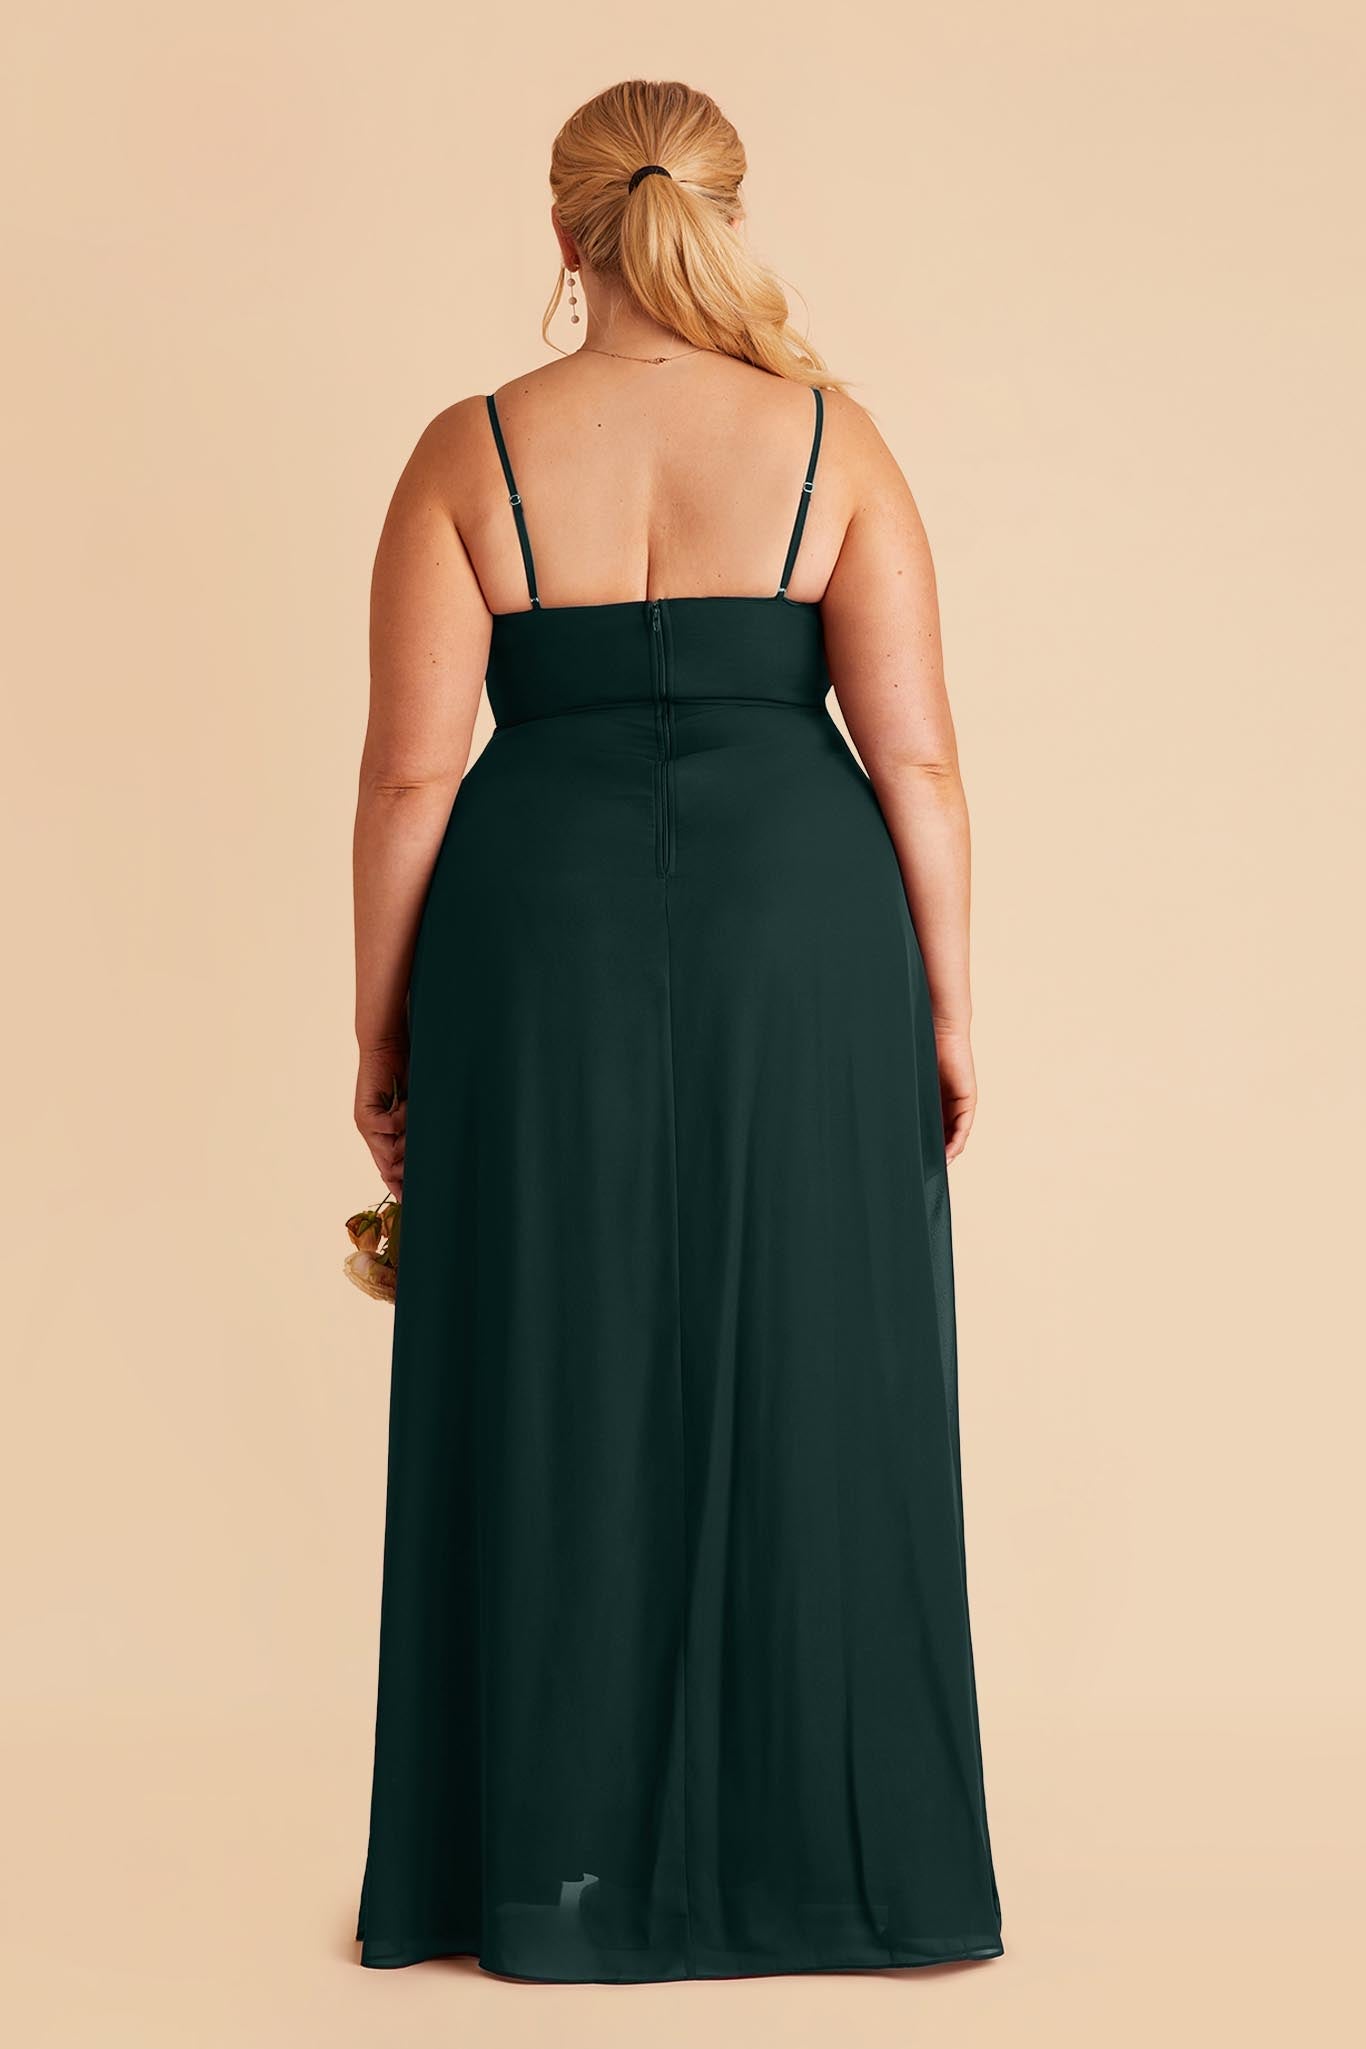 Emerald Amy Chiffon Dress by Birdy Grey